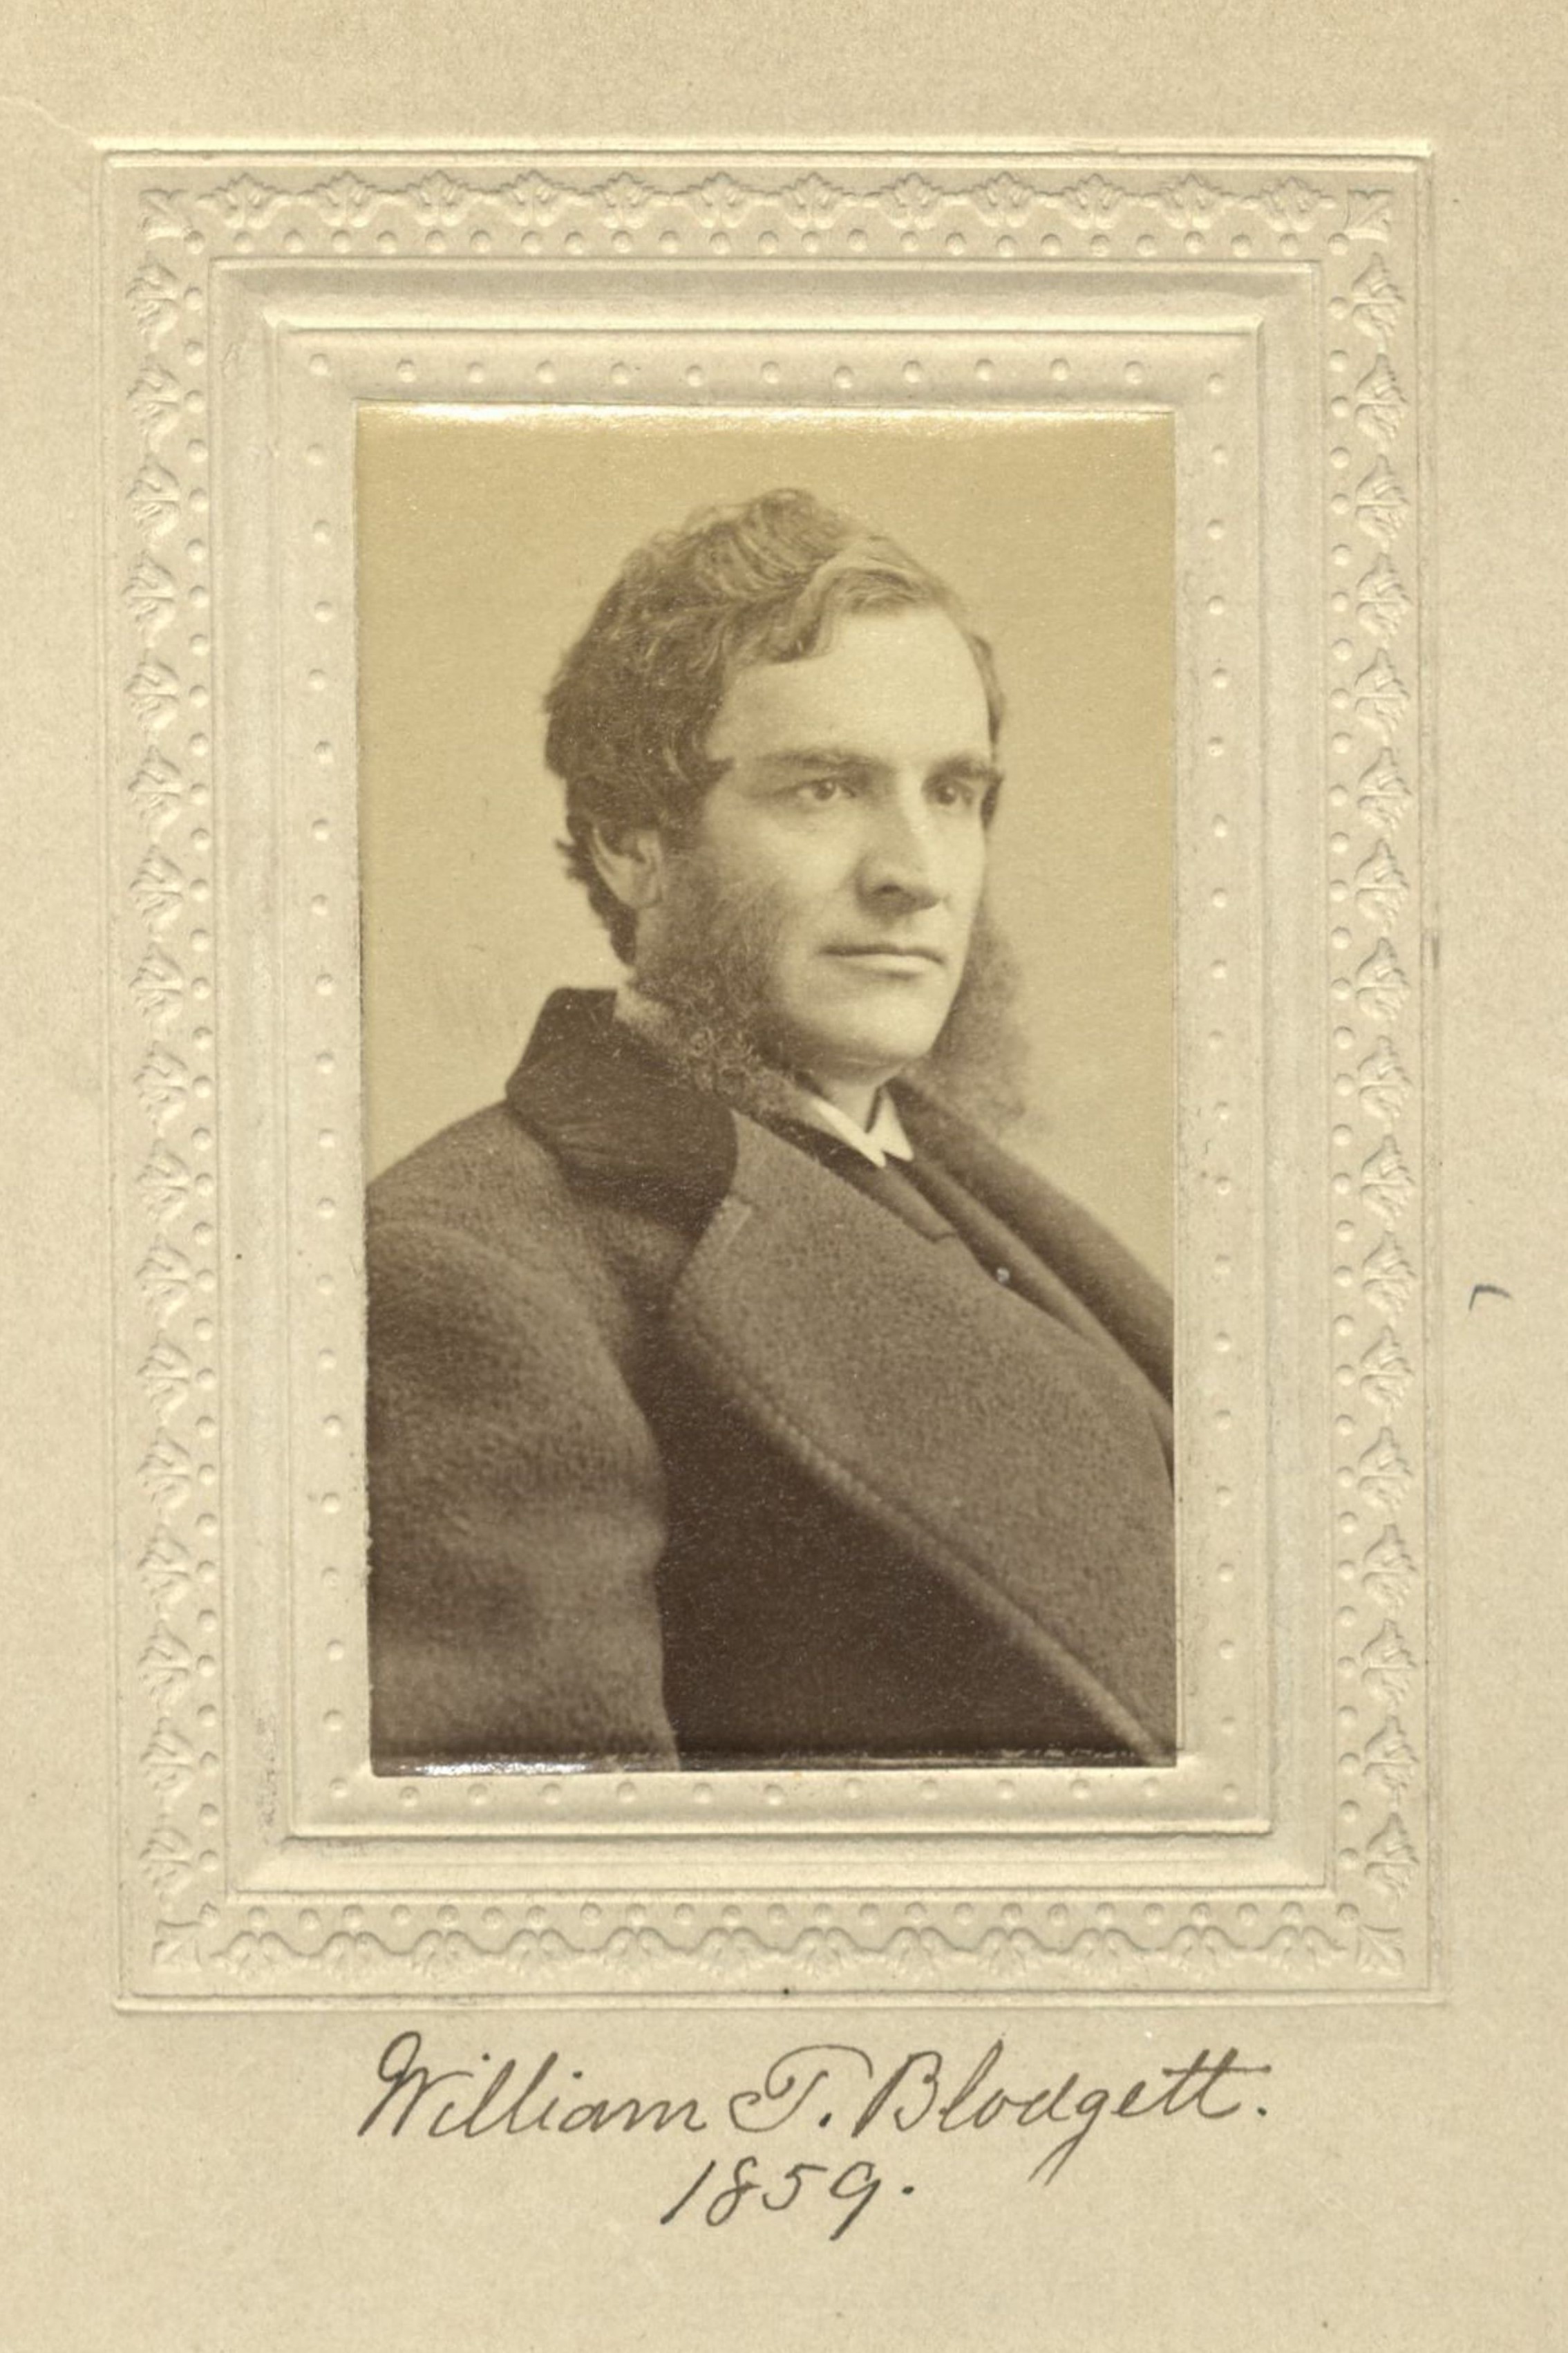 Member portrait of William T. Blodgett